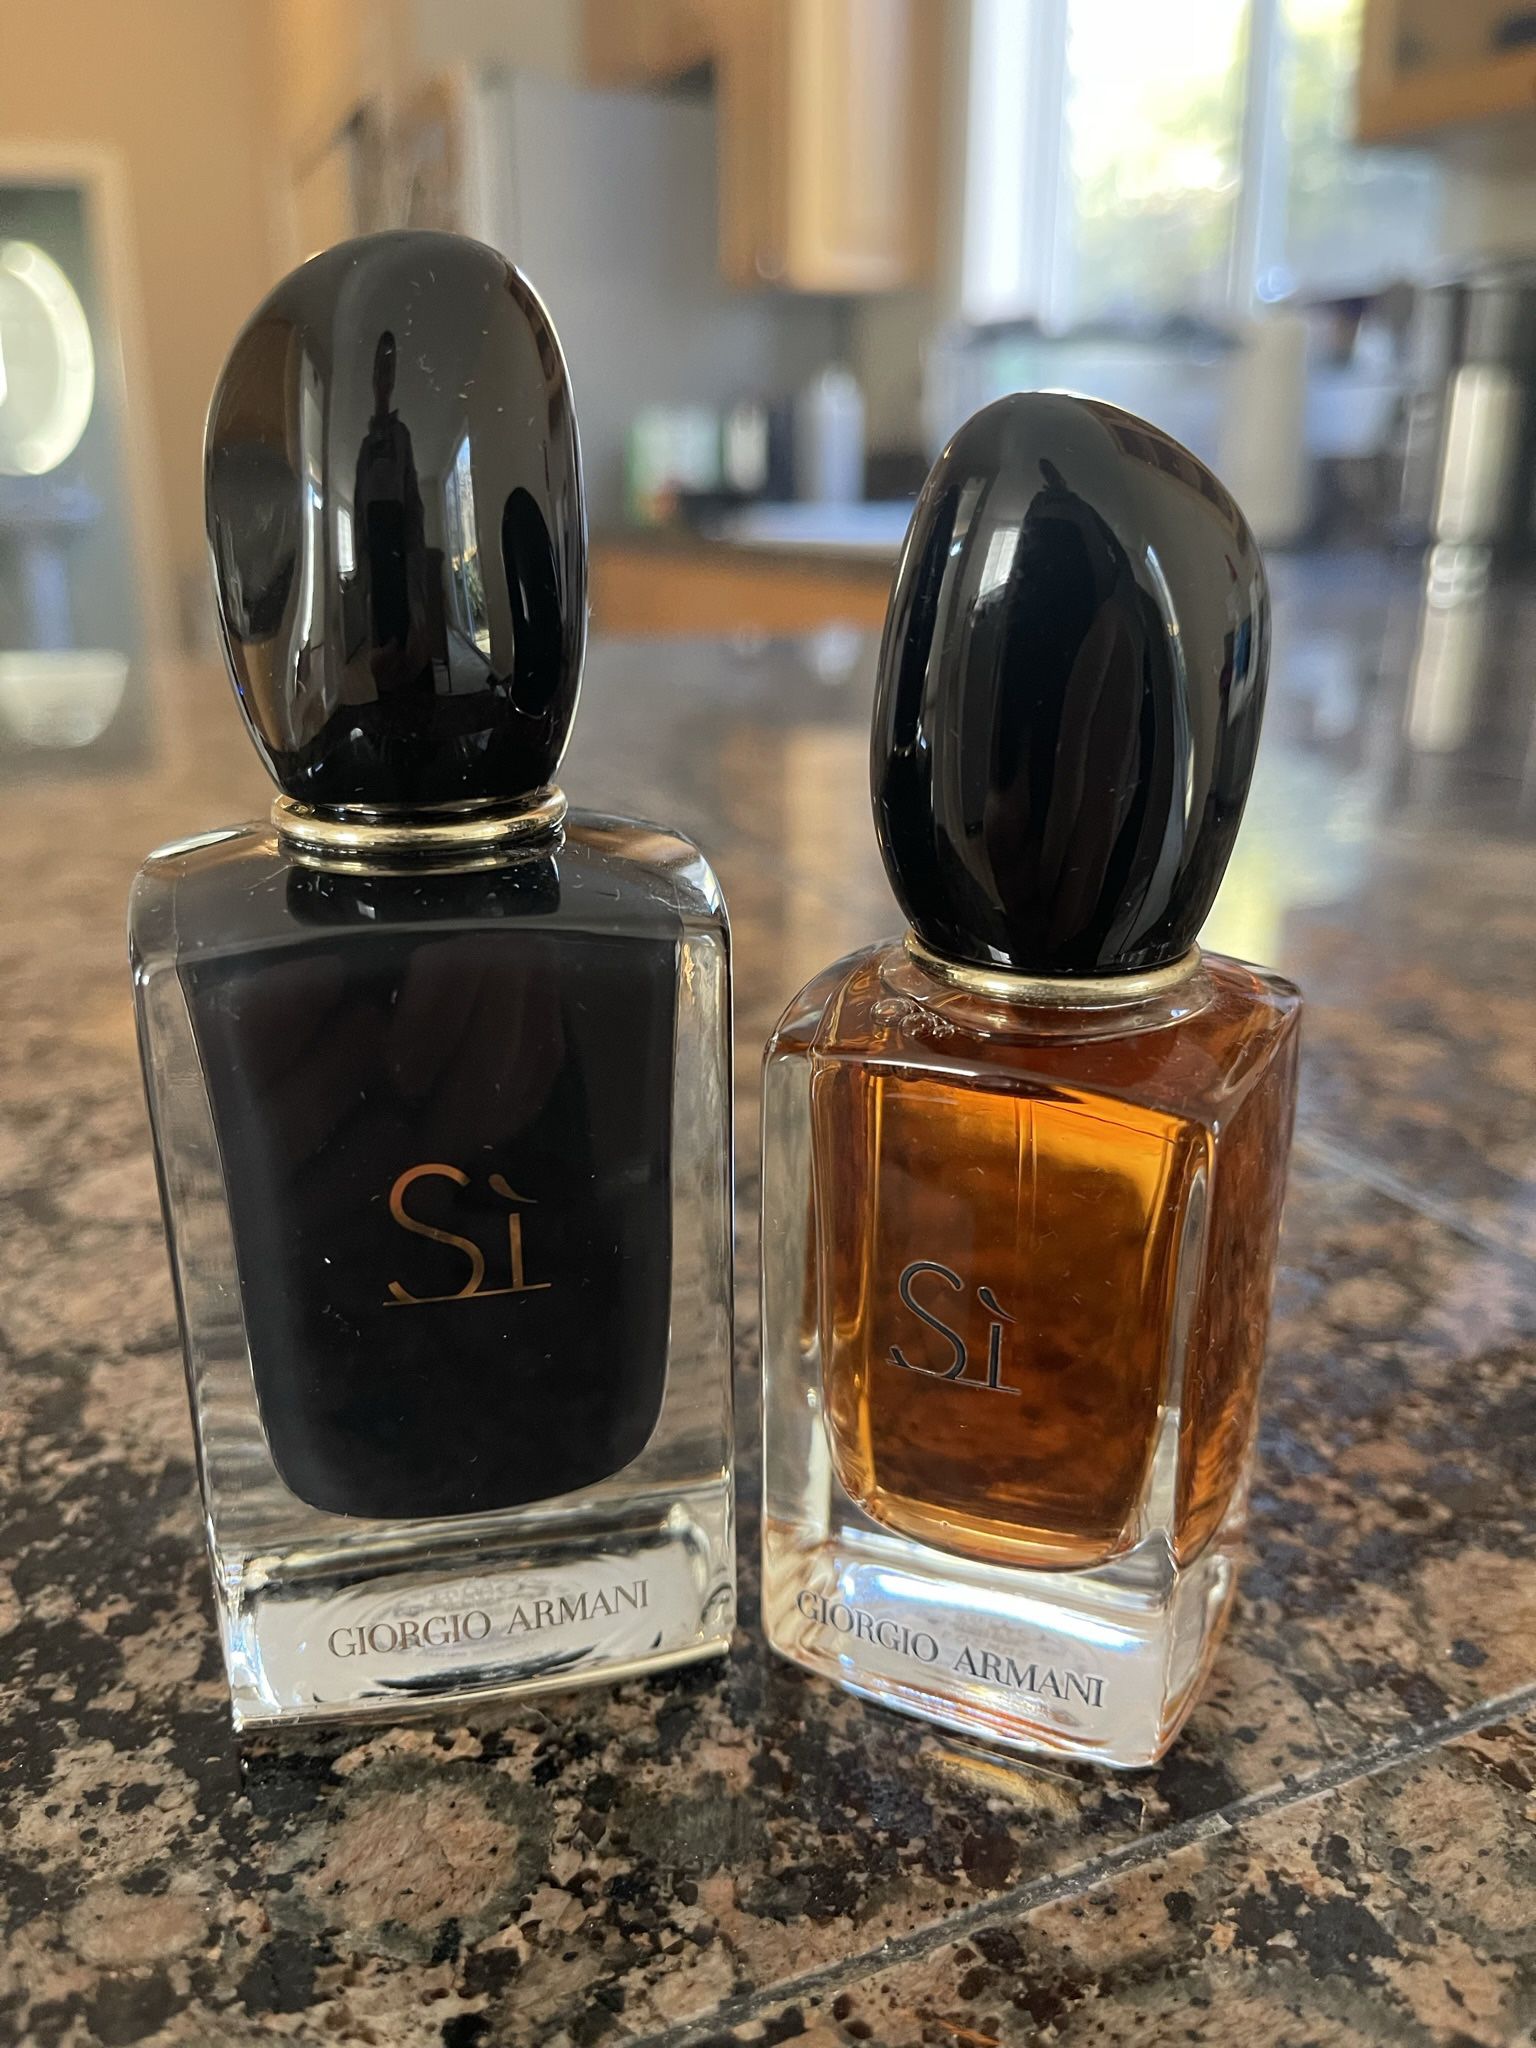 Georgio Armani “Si” Women’s Perfume  2 For $60